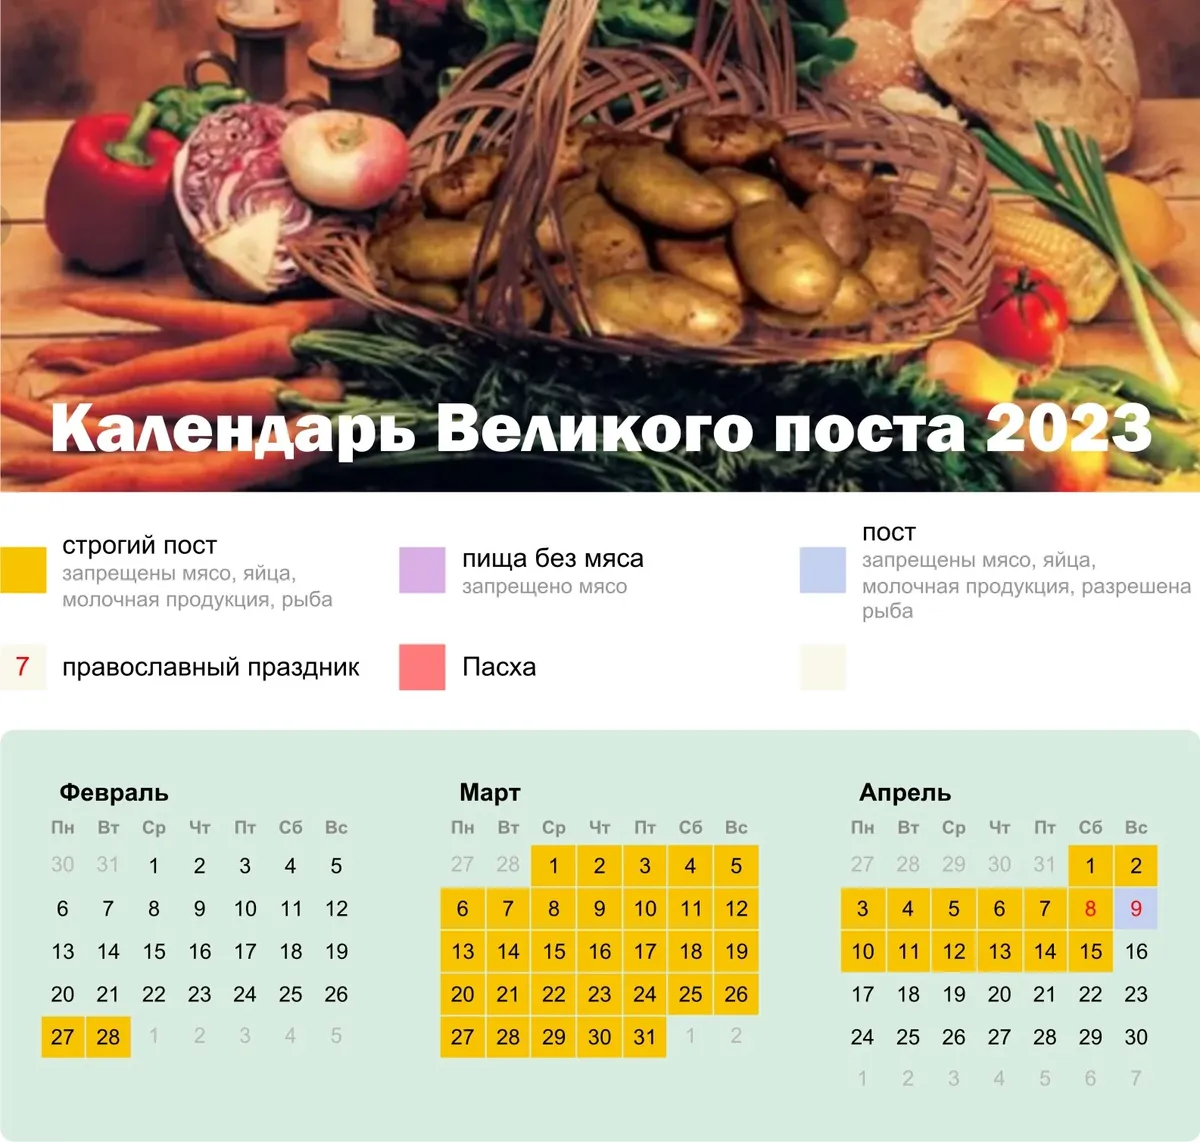 Постные дни март 2024 православный. Календарь питания. Великий пост 2023 календарь питания. Питание в дни Великого поста. Календарь питания в Великий пост 2023 года.